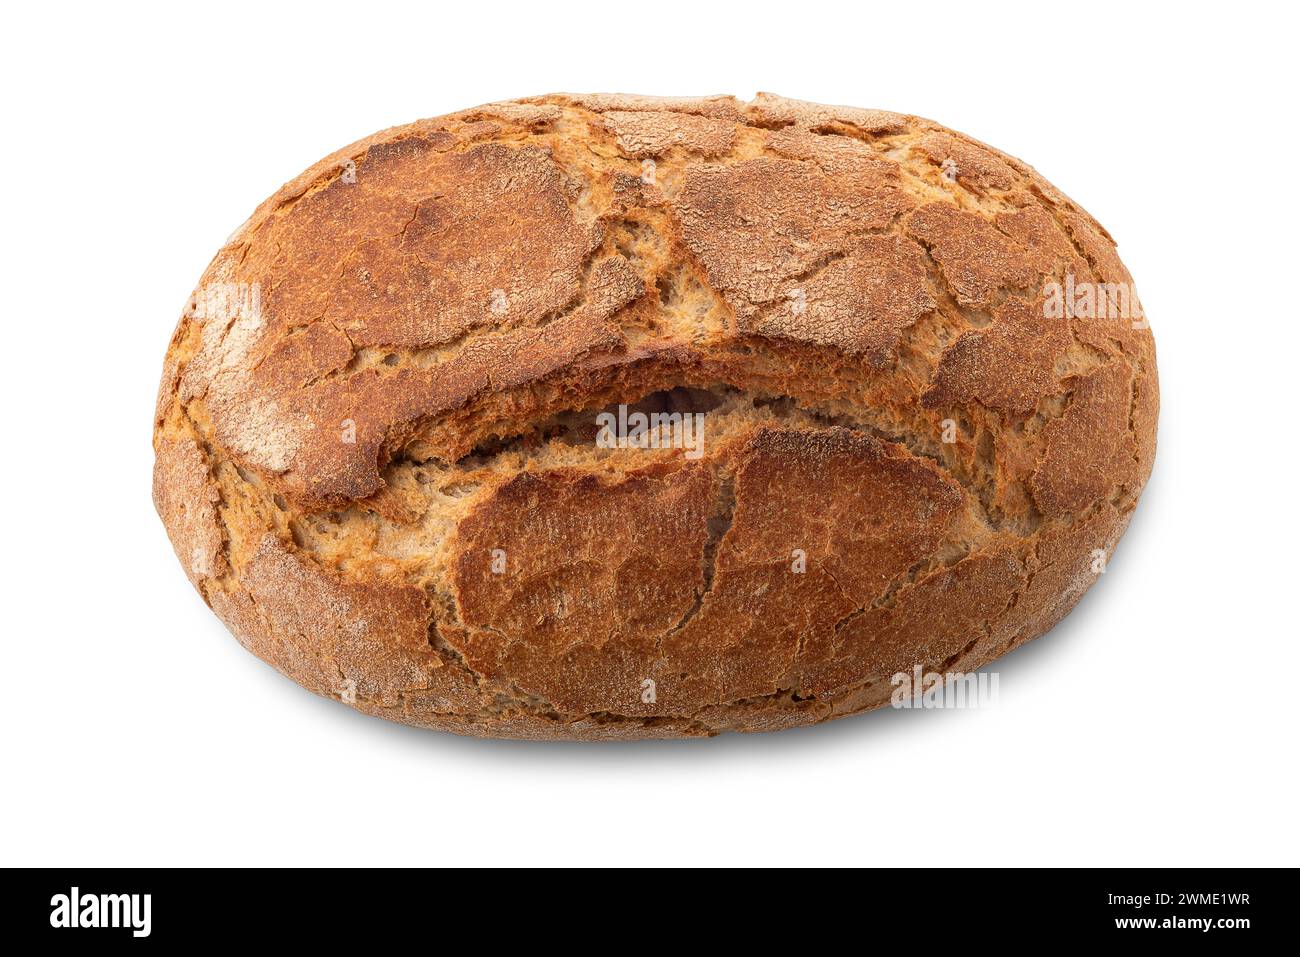 Pan di pane di segale integrale con crosta marrone vista dall'alto isolata sul bianco con percorso di ritaglio incluso Foto Stock